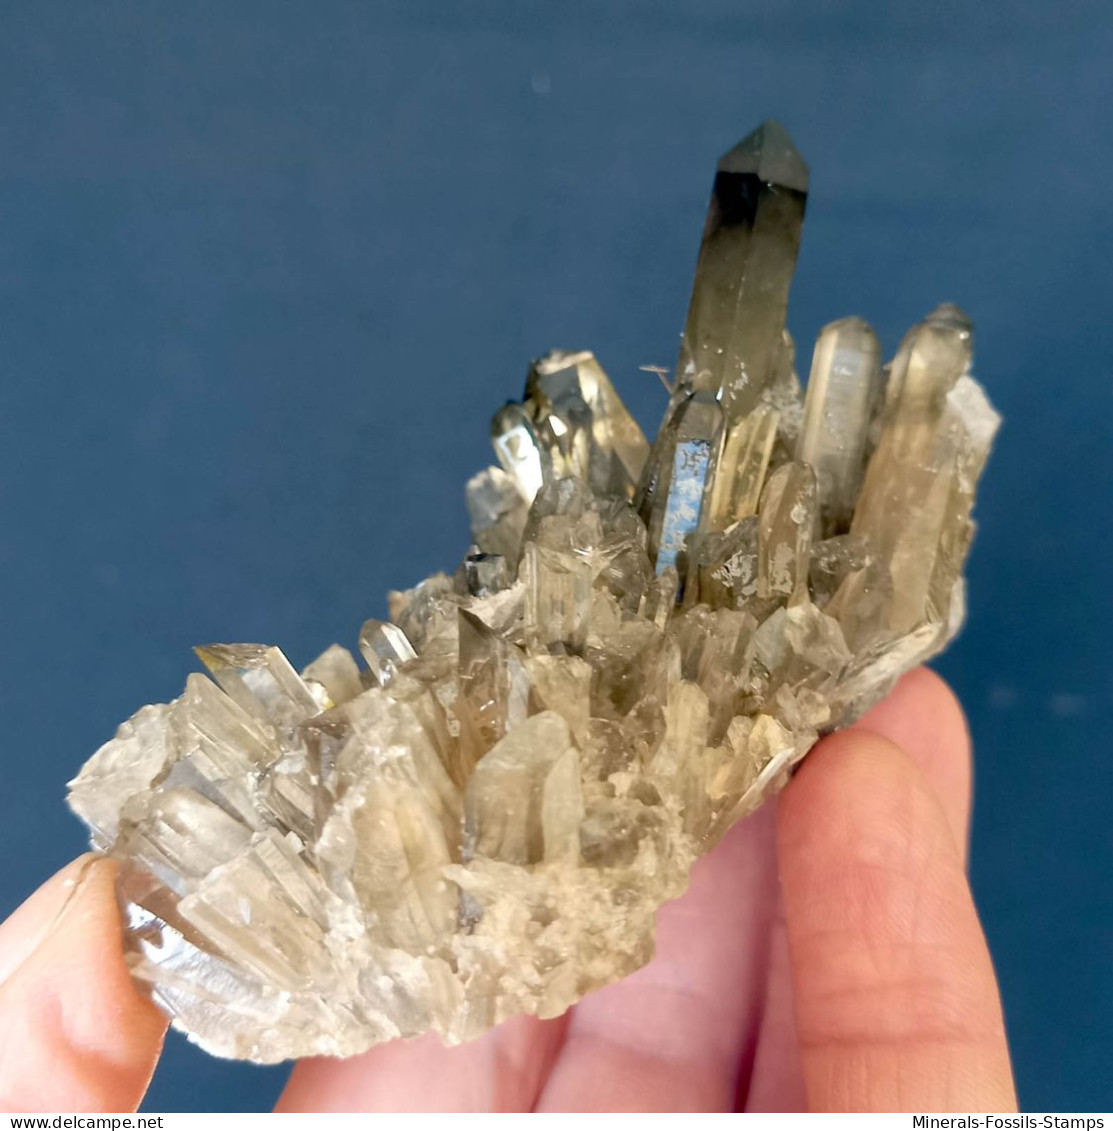 #07 – SCHÖNE MORIONE QUARZ Kristalle (Kara-Oba, Moiynkum, Jambyl, Kasachstan) - Minerales